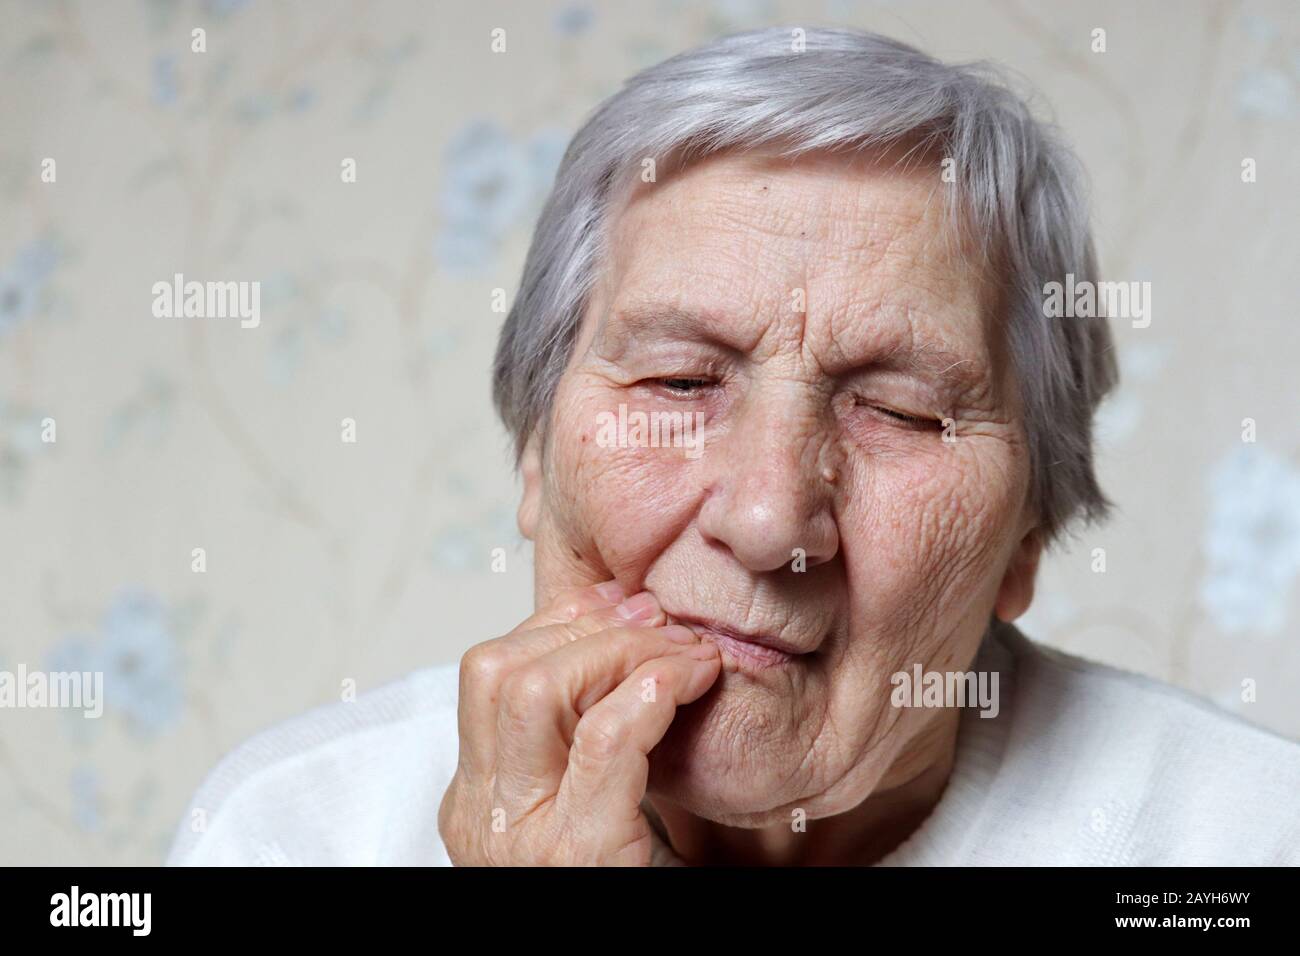 Ältere Frau, die ihre Wange hält, Frau mit grauem Haar, das an einer Zahnschmerzen leidet. Konzept von Zahnschmerzen, Zahnfleischerkrankungen und Alter Stockfoto